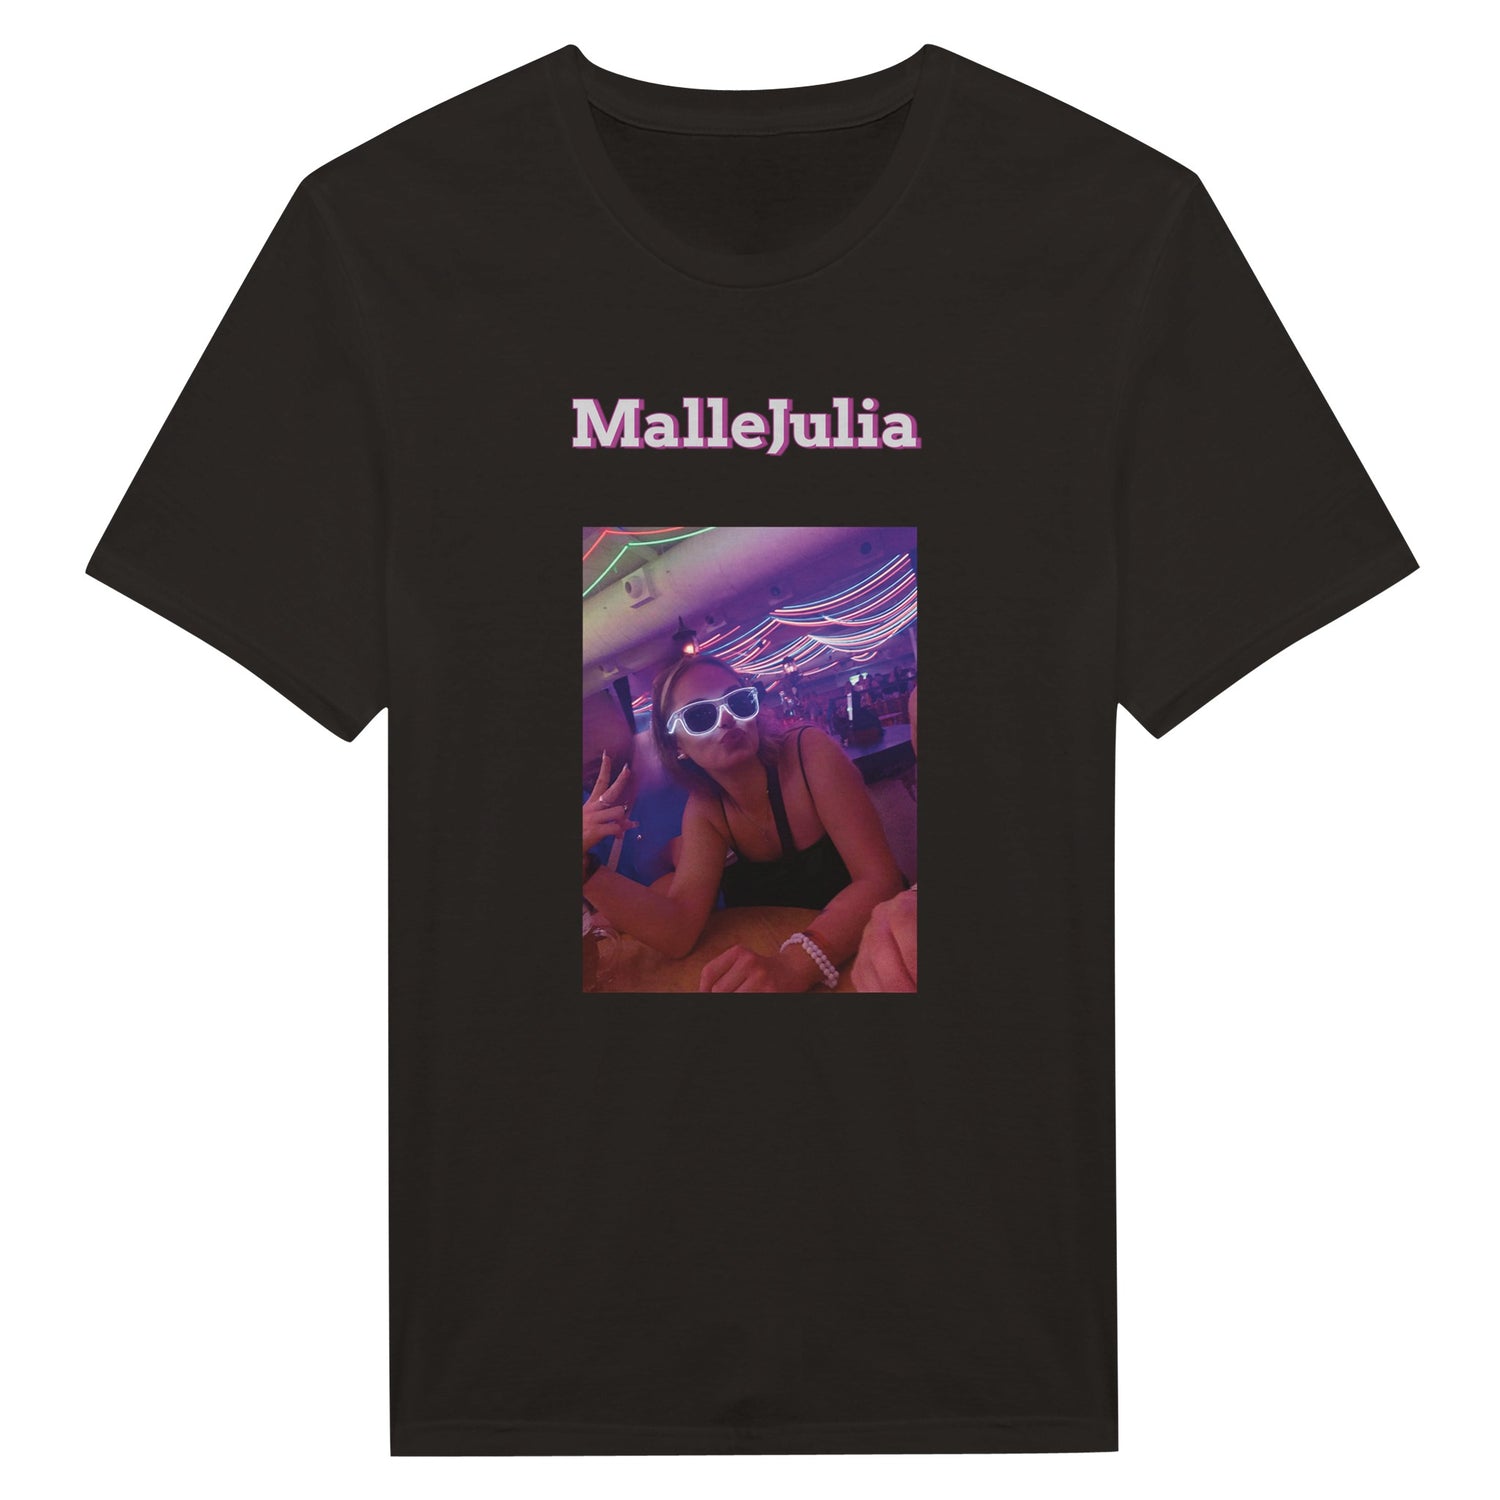 Mallorca-Urlaub-tshirt-party-personalisieren-schwarz